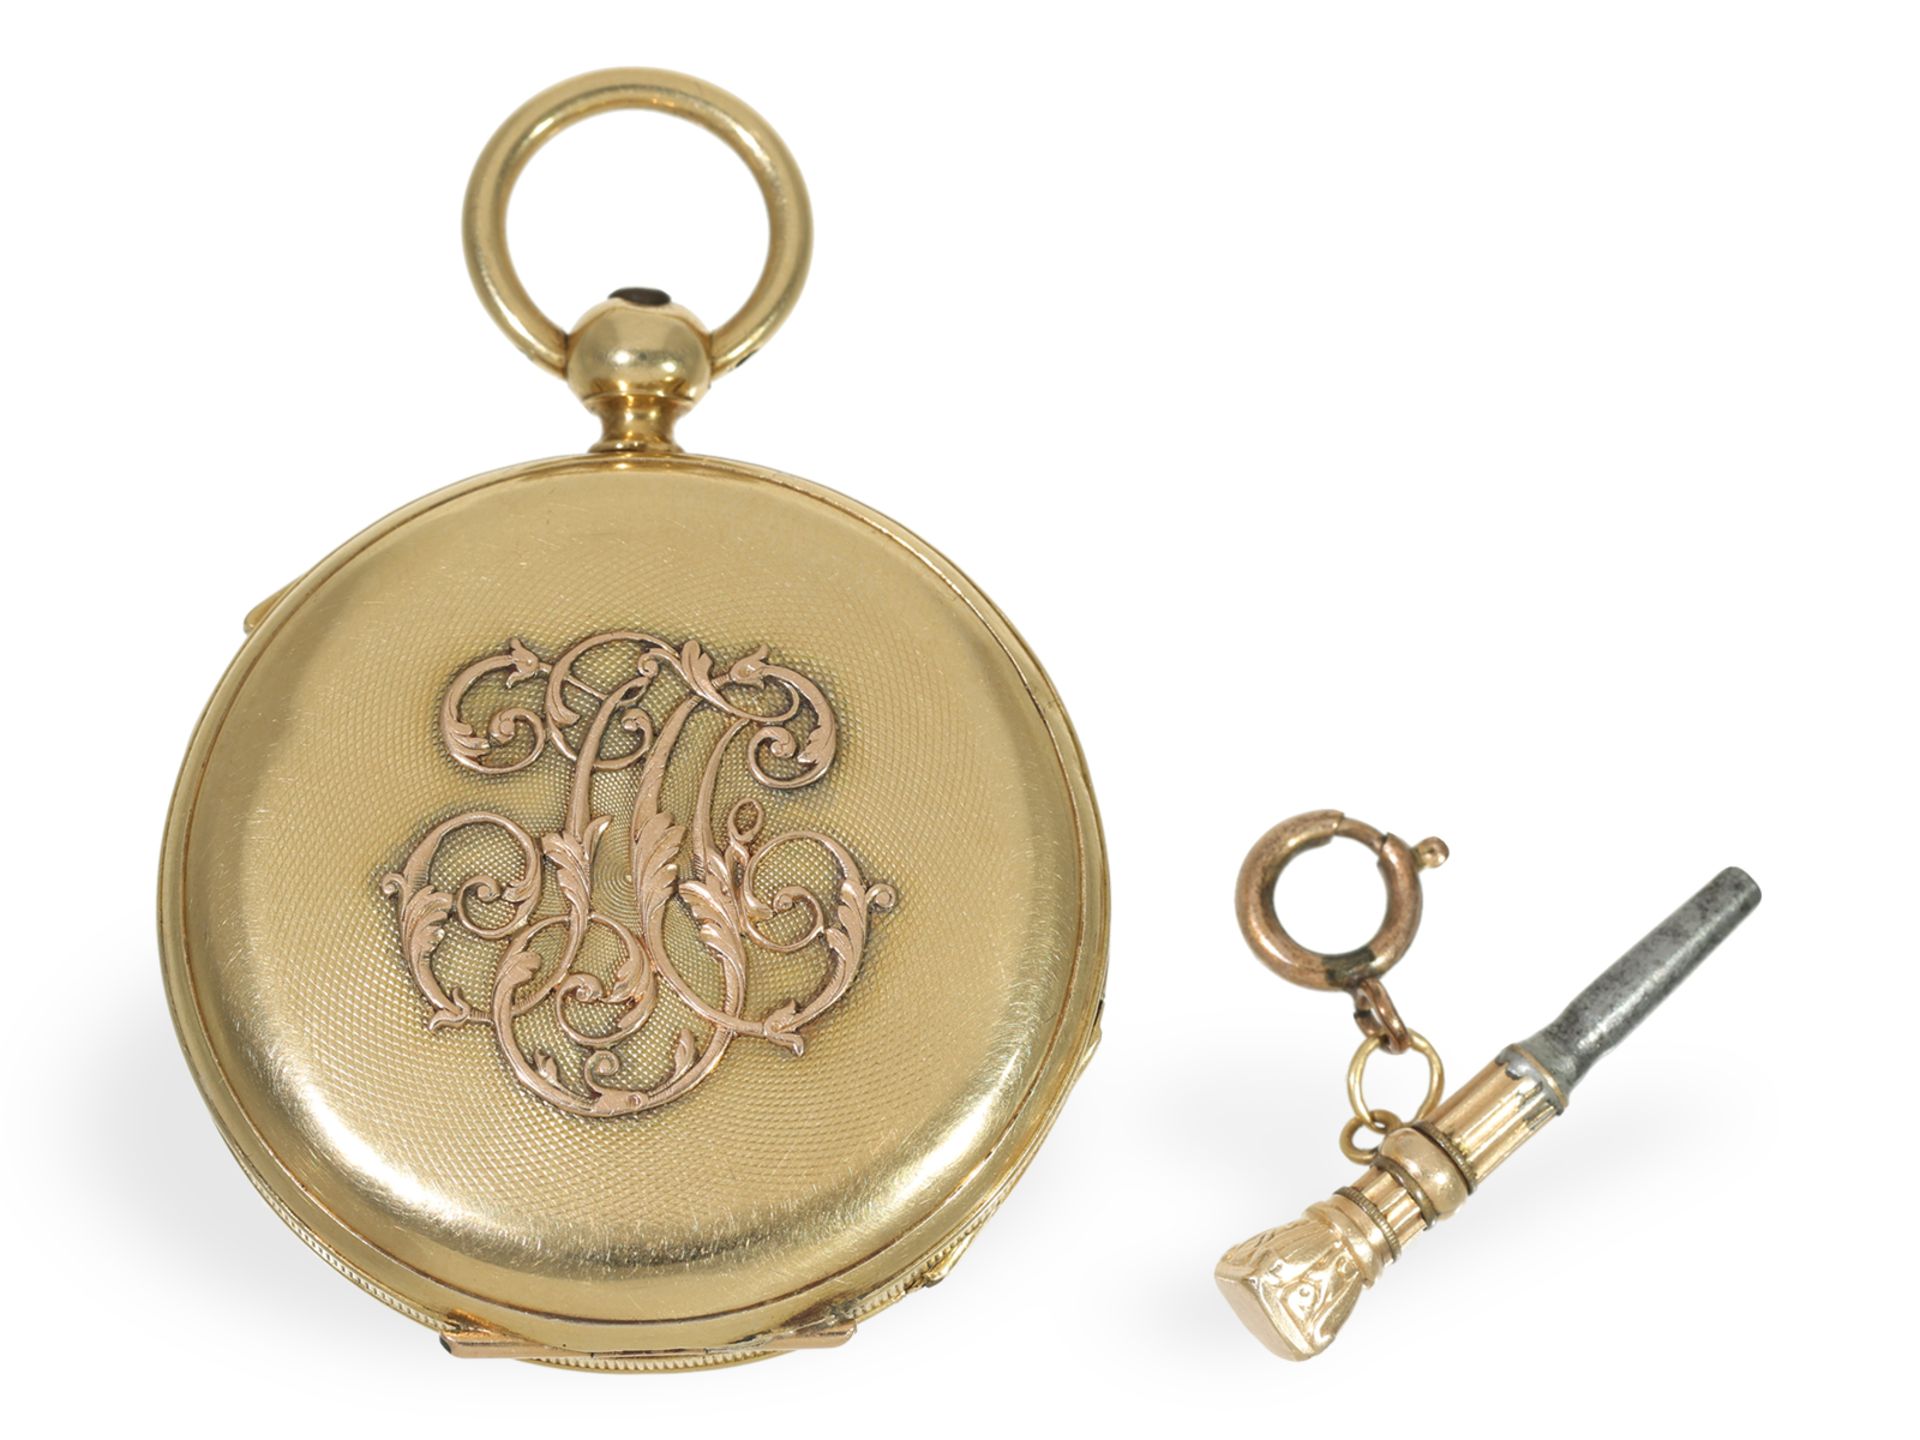 Taschenuhr: sehr seltene Damentaschenuhr mit Repetition, Jeannot Droz a Besancon ca. 1850 - Bild 2 aus 7